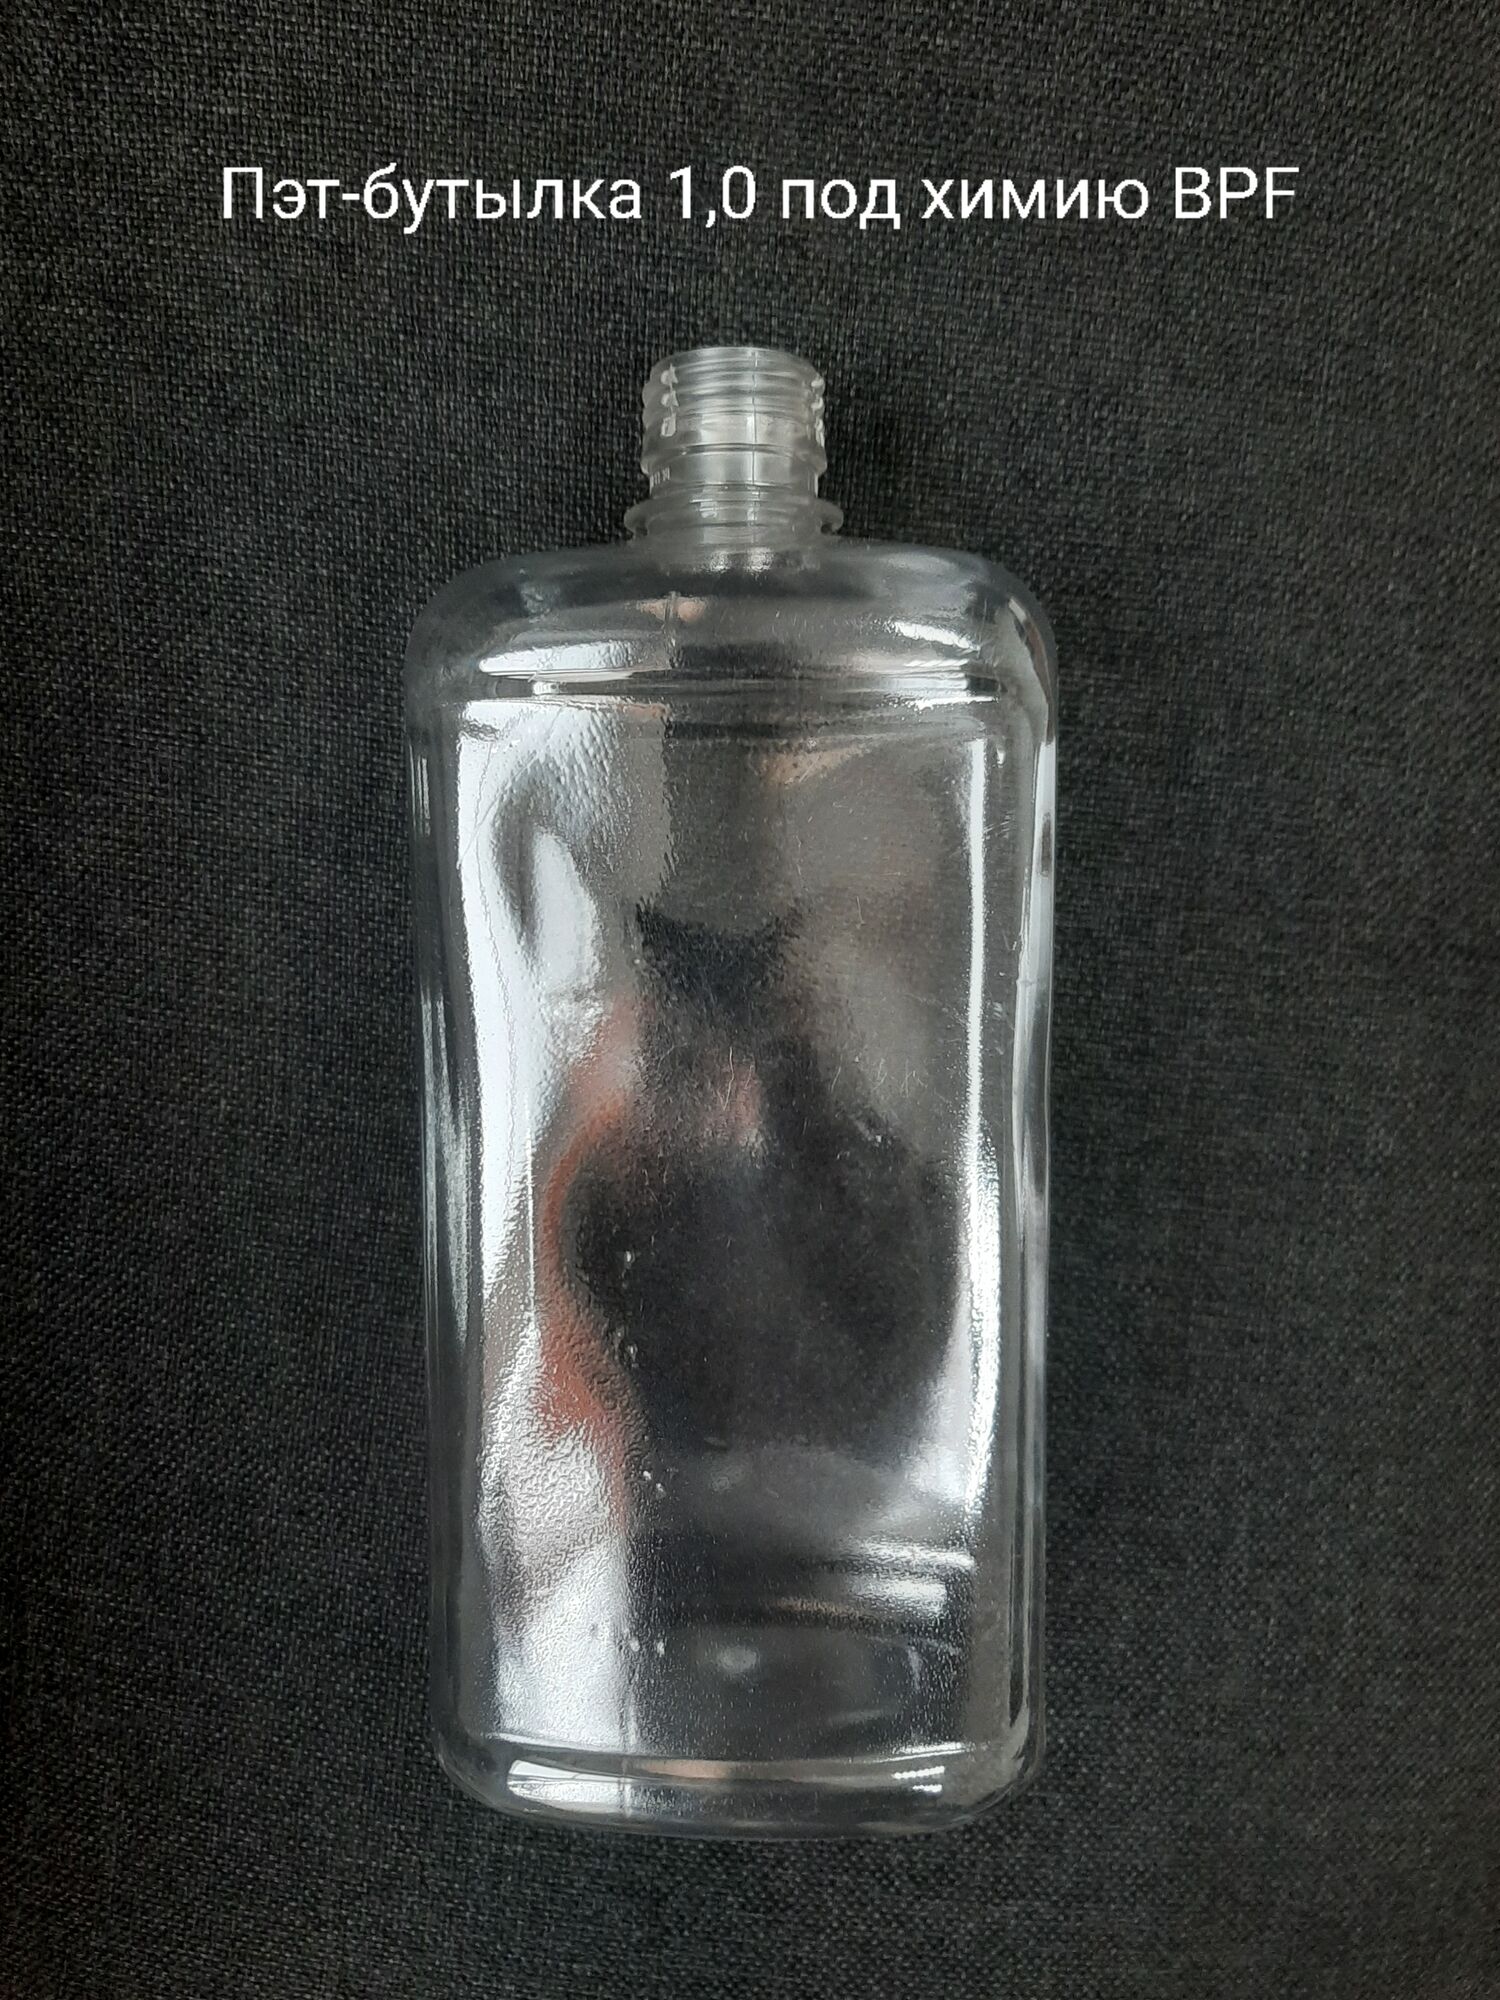 Пэт-бутылка 1,0 под химию BPF, бесцветная (120 шт в упаковке) вес 38 гр.